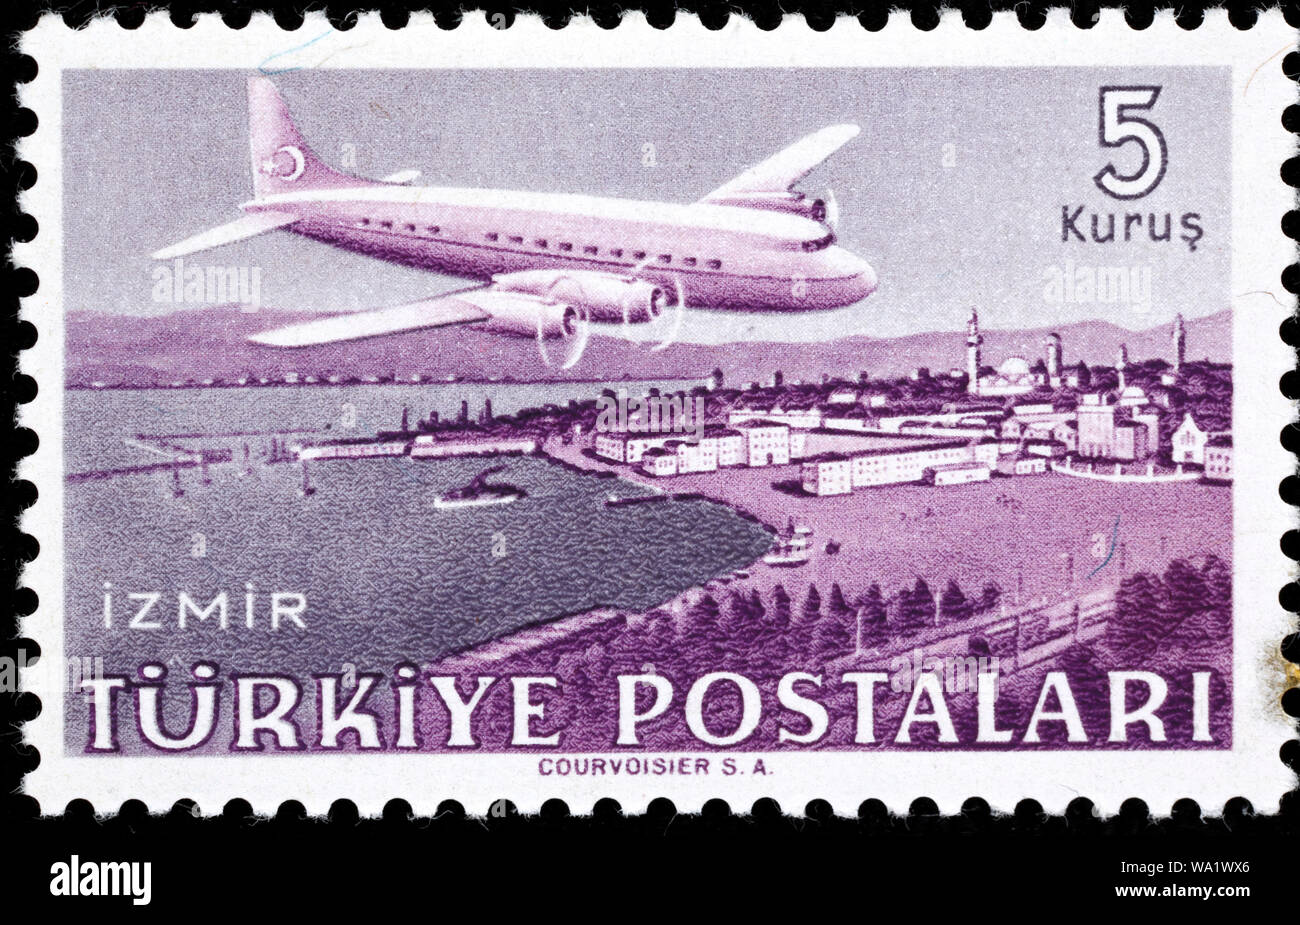 Douglas DC-6 avion sur Izmir, timbre-poste, Turquie, 1949 Banque D'Images